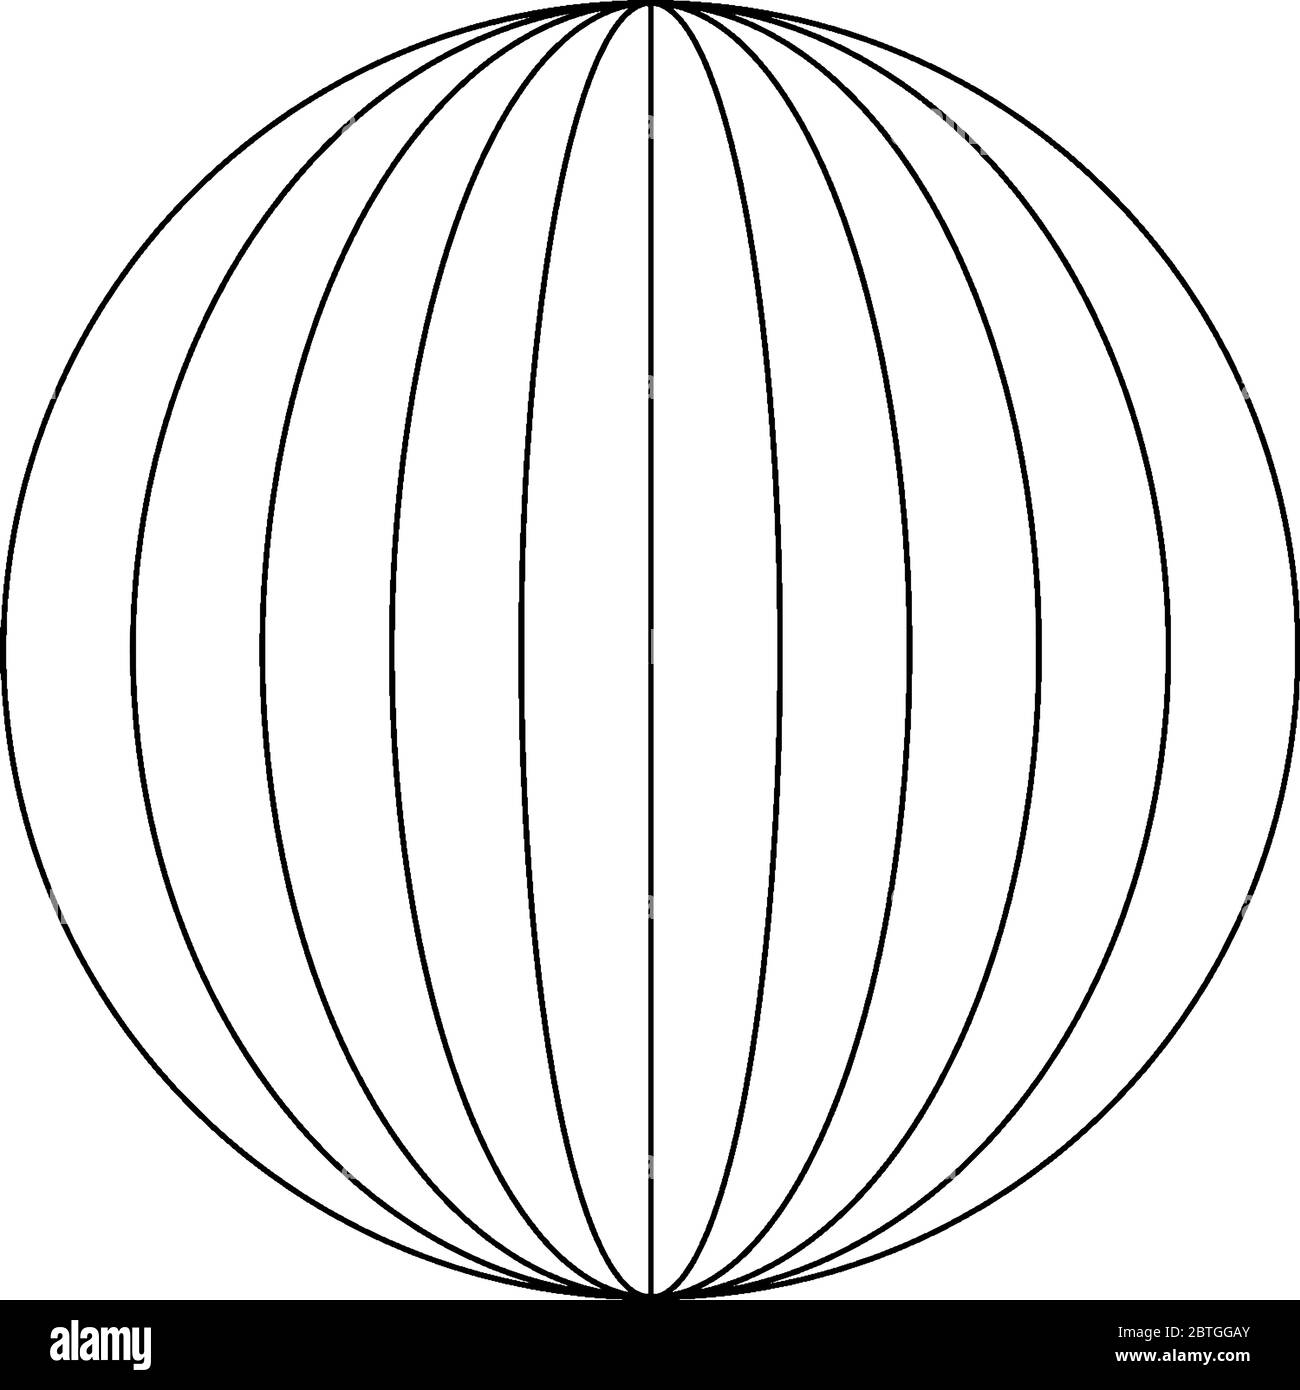 Quatre ellipses à l'intérieur D'UN cercle avec une ligne verticale au centre. L'axe principal des ellipses est l'axe vertical, le dessin de ligne vintage ou la gravure il Illustration de Vecteur